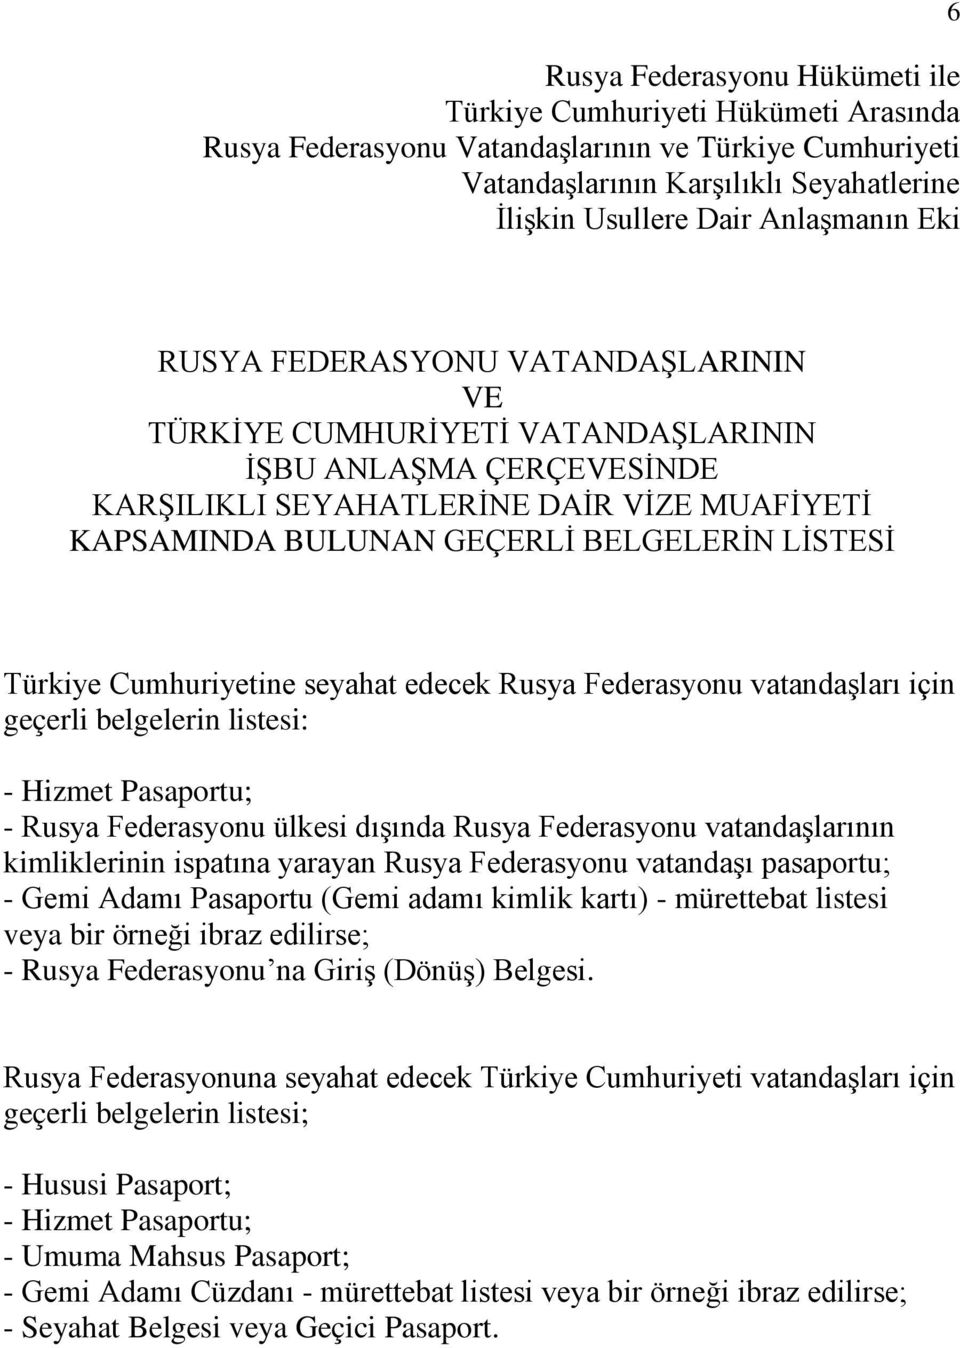 Türkiye Cumhuriyetine seyahat edecek Rusya Federasyonu vatandaşları için geçerli belgelerin listesi: - Hizmet Pasaportu; - Rusya Federasyonu ülkesi dışında Rusya Federasyonu vatandaşlarının